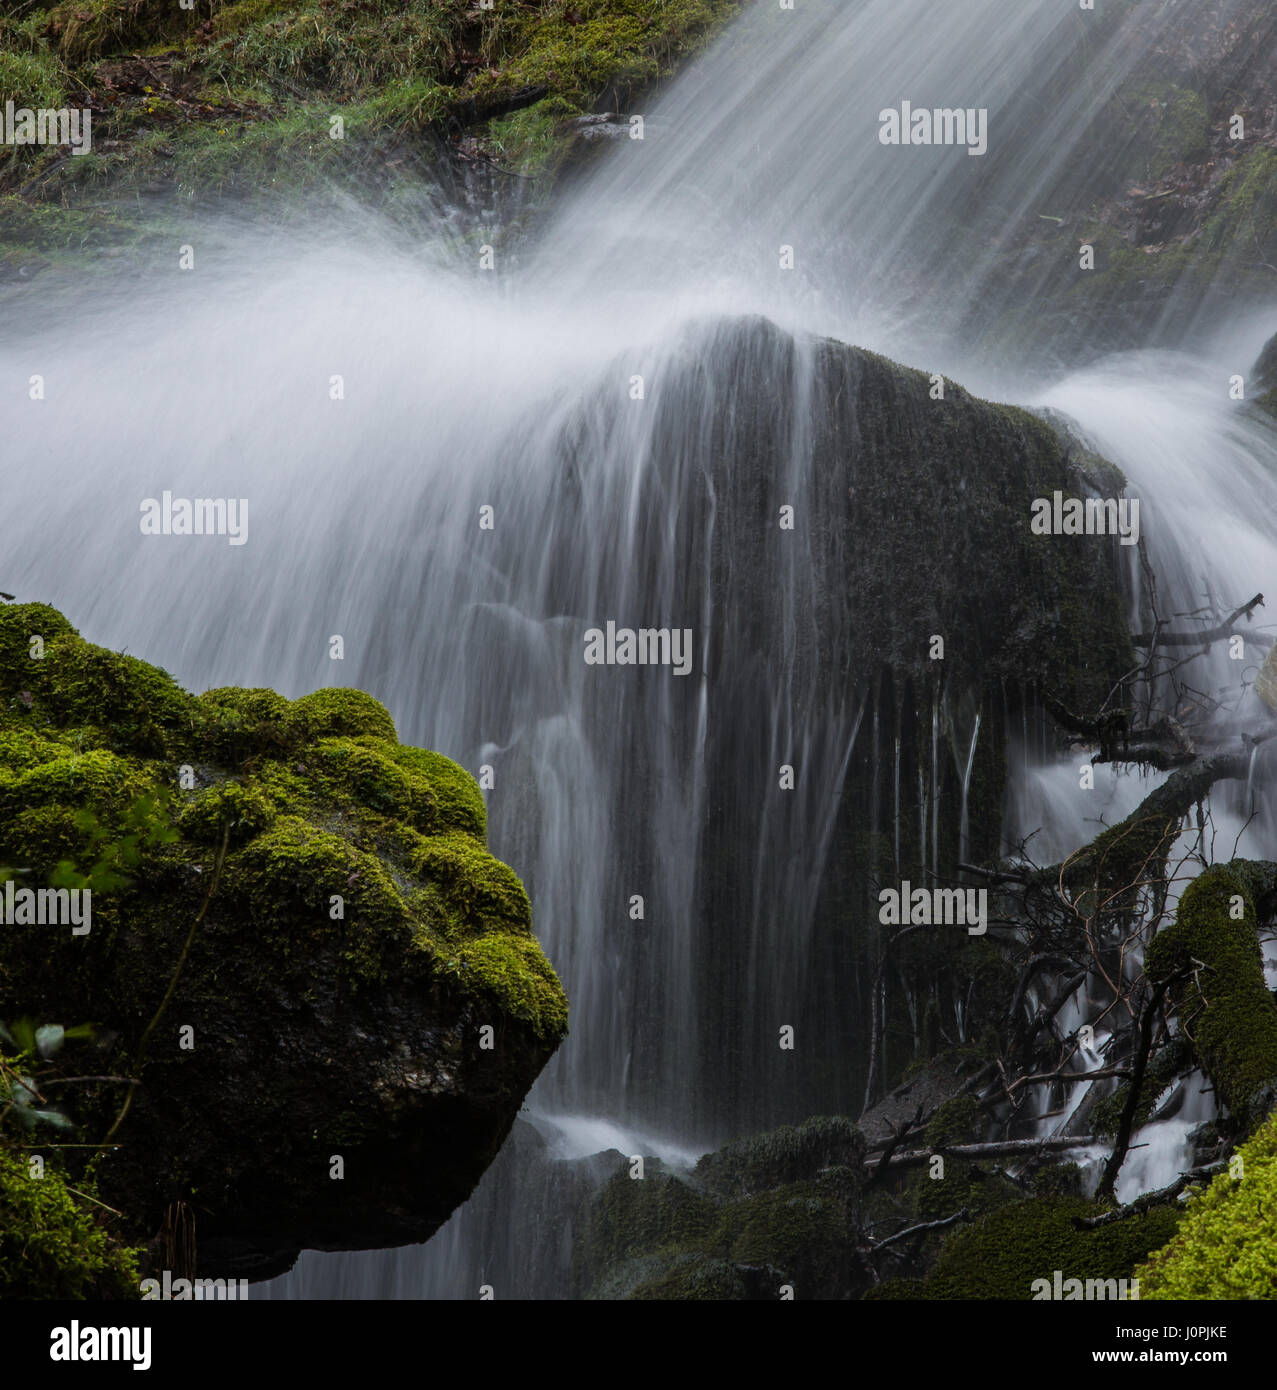 Wasserfall in Strömen über einen großen Klumpen aus Granit. Stockfoto